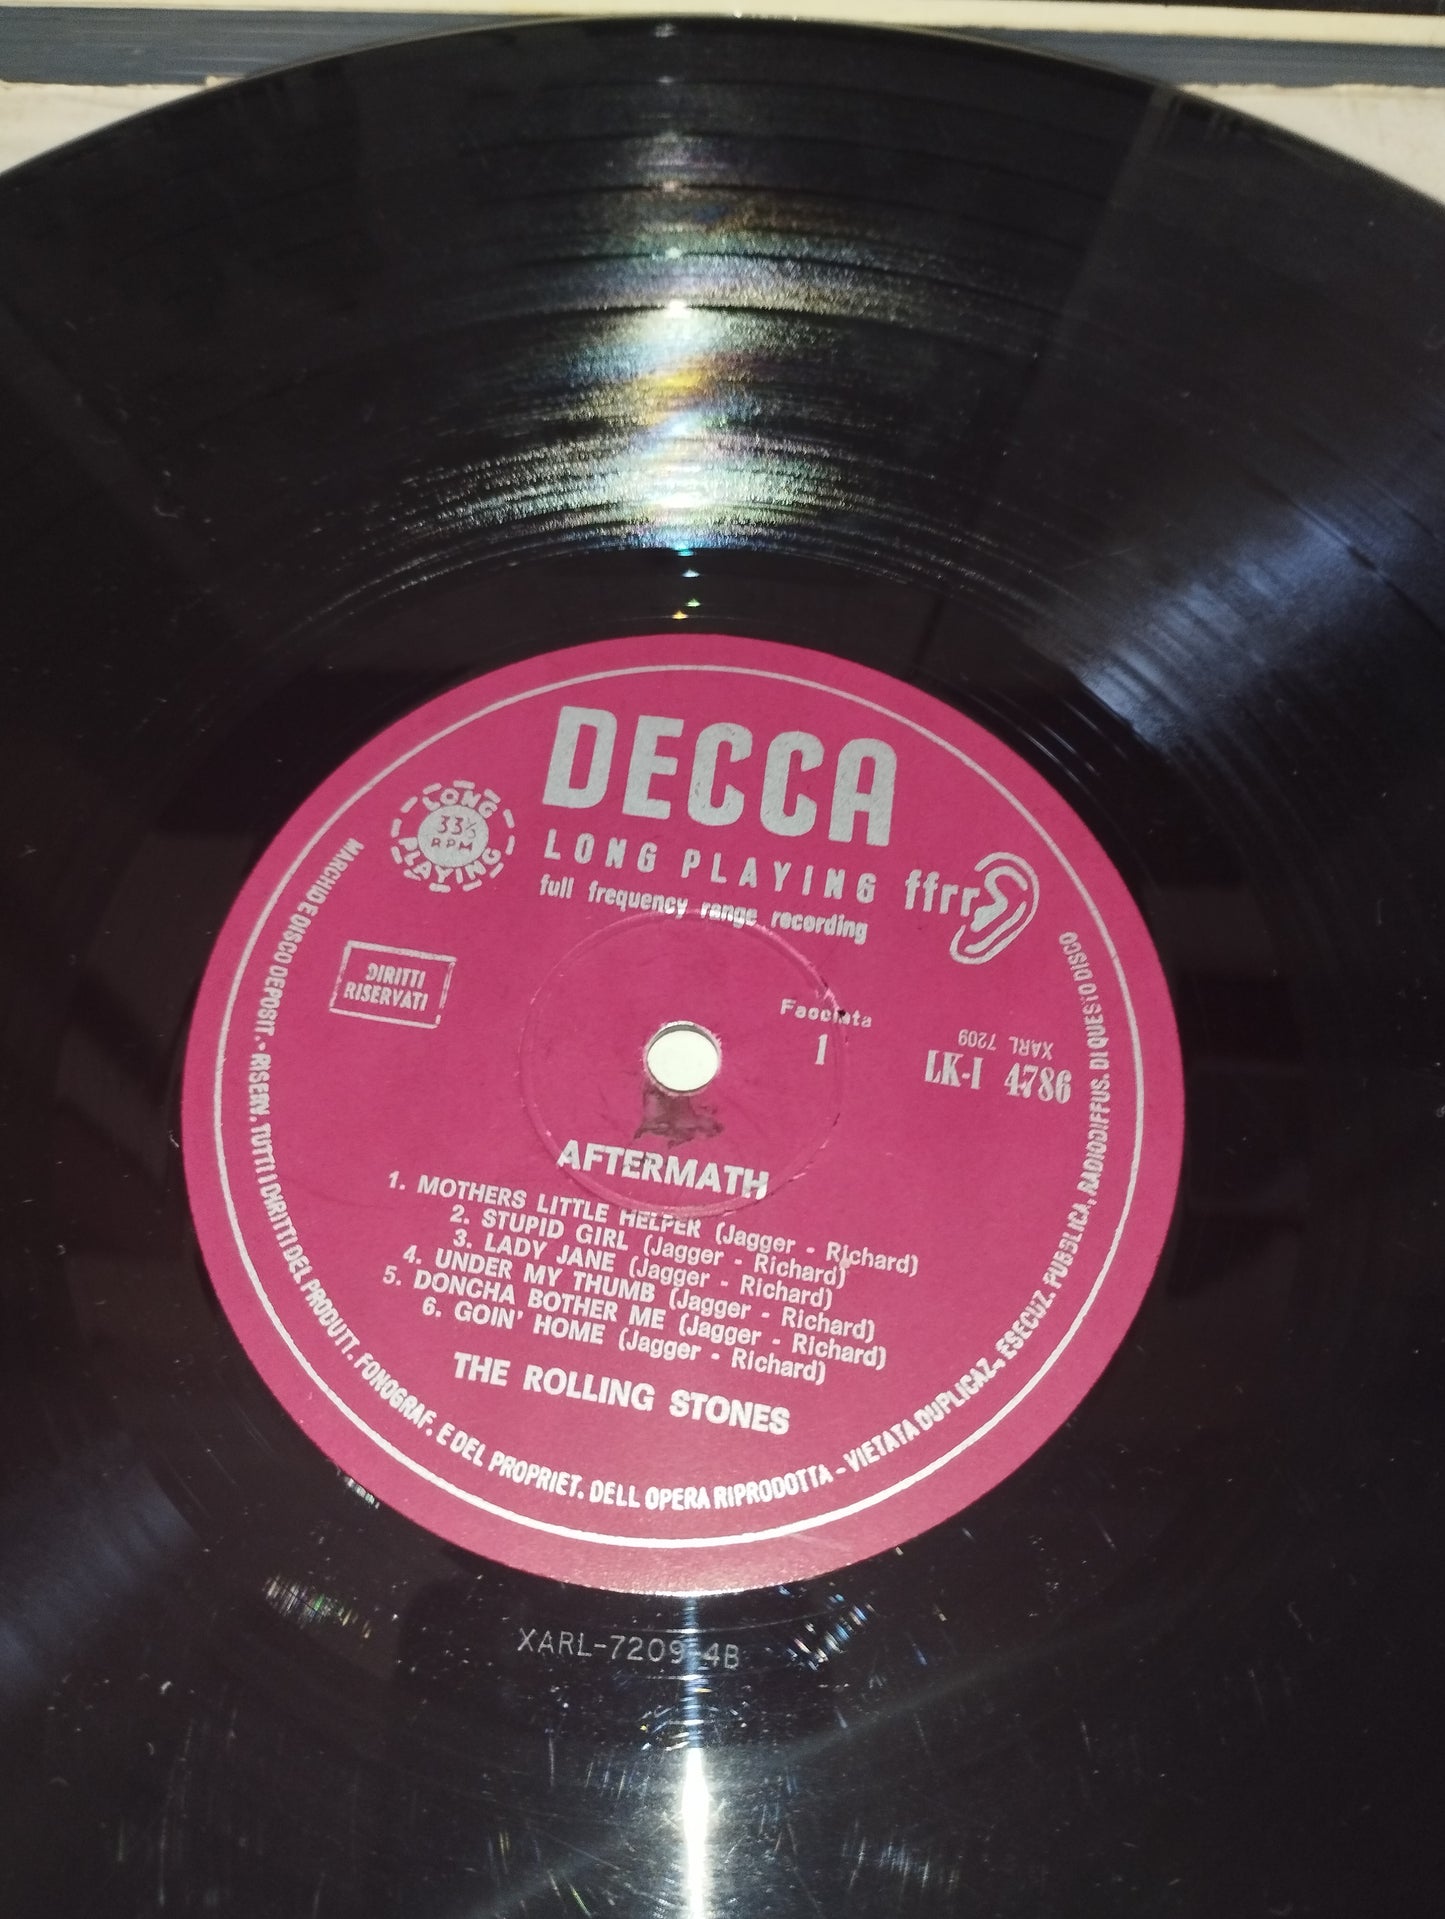 After-Math" The Rolling Stones Lp 33 giri

Edito nel 1966 da Decca cod.LK-I 4786

Versione Mono